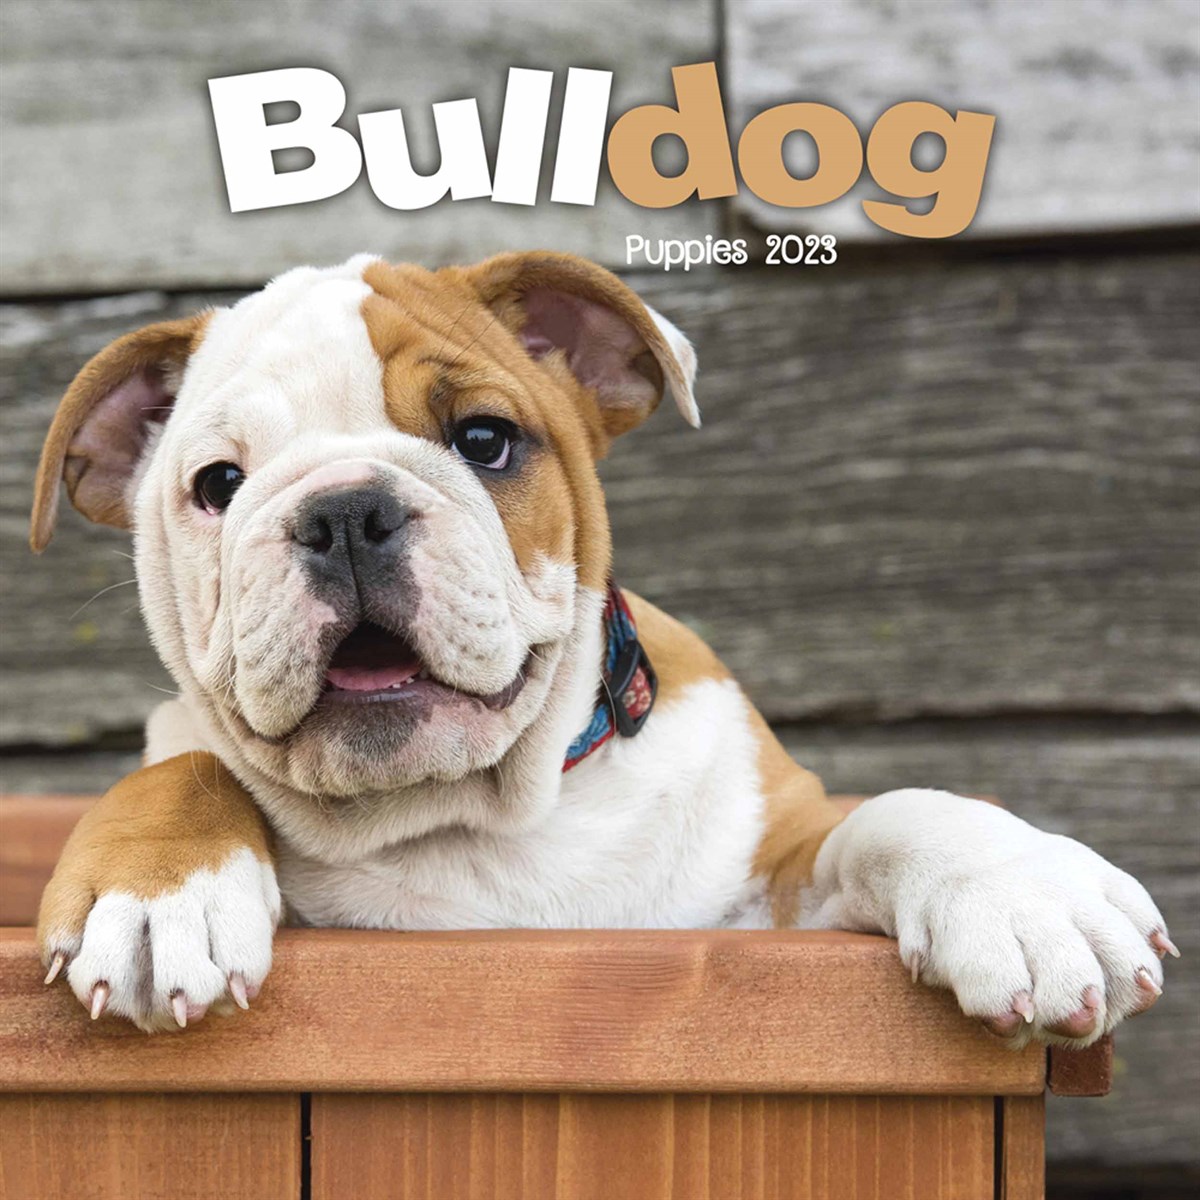 Bulldog Puppies Mini 2023 Calendars